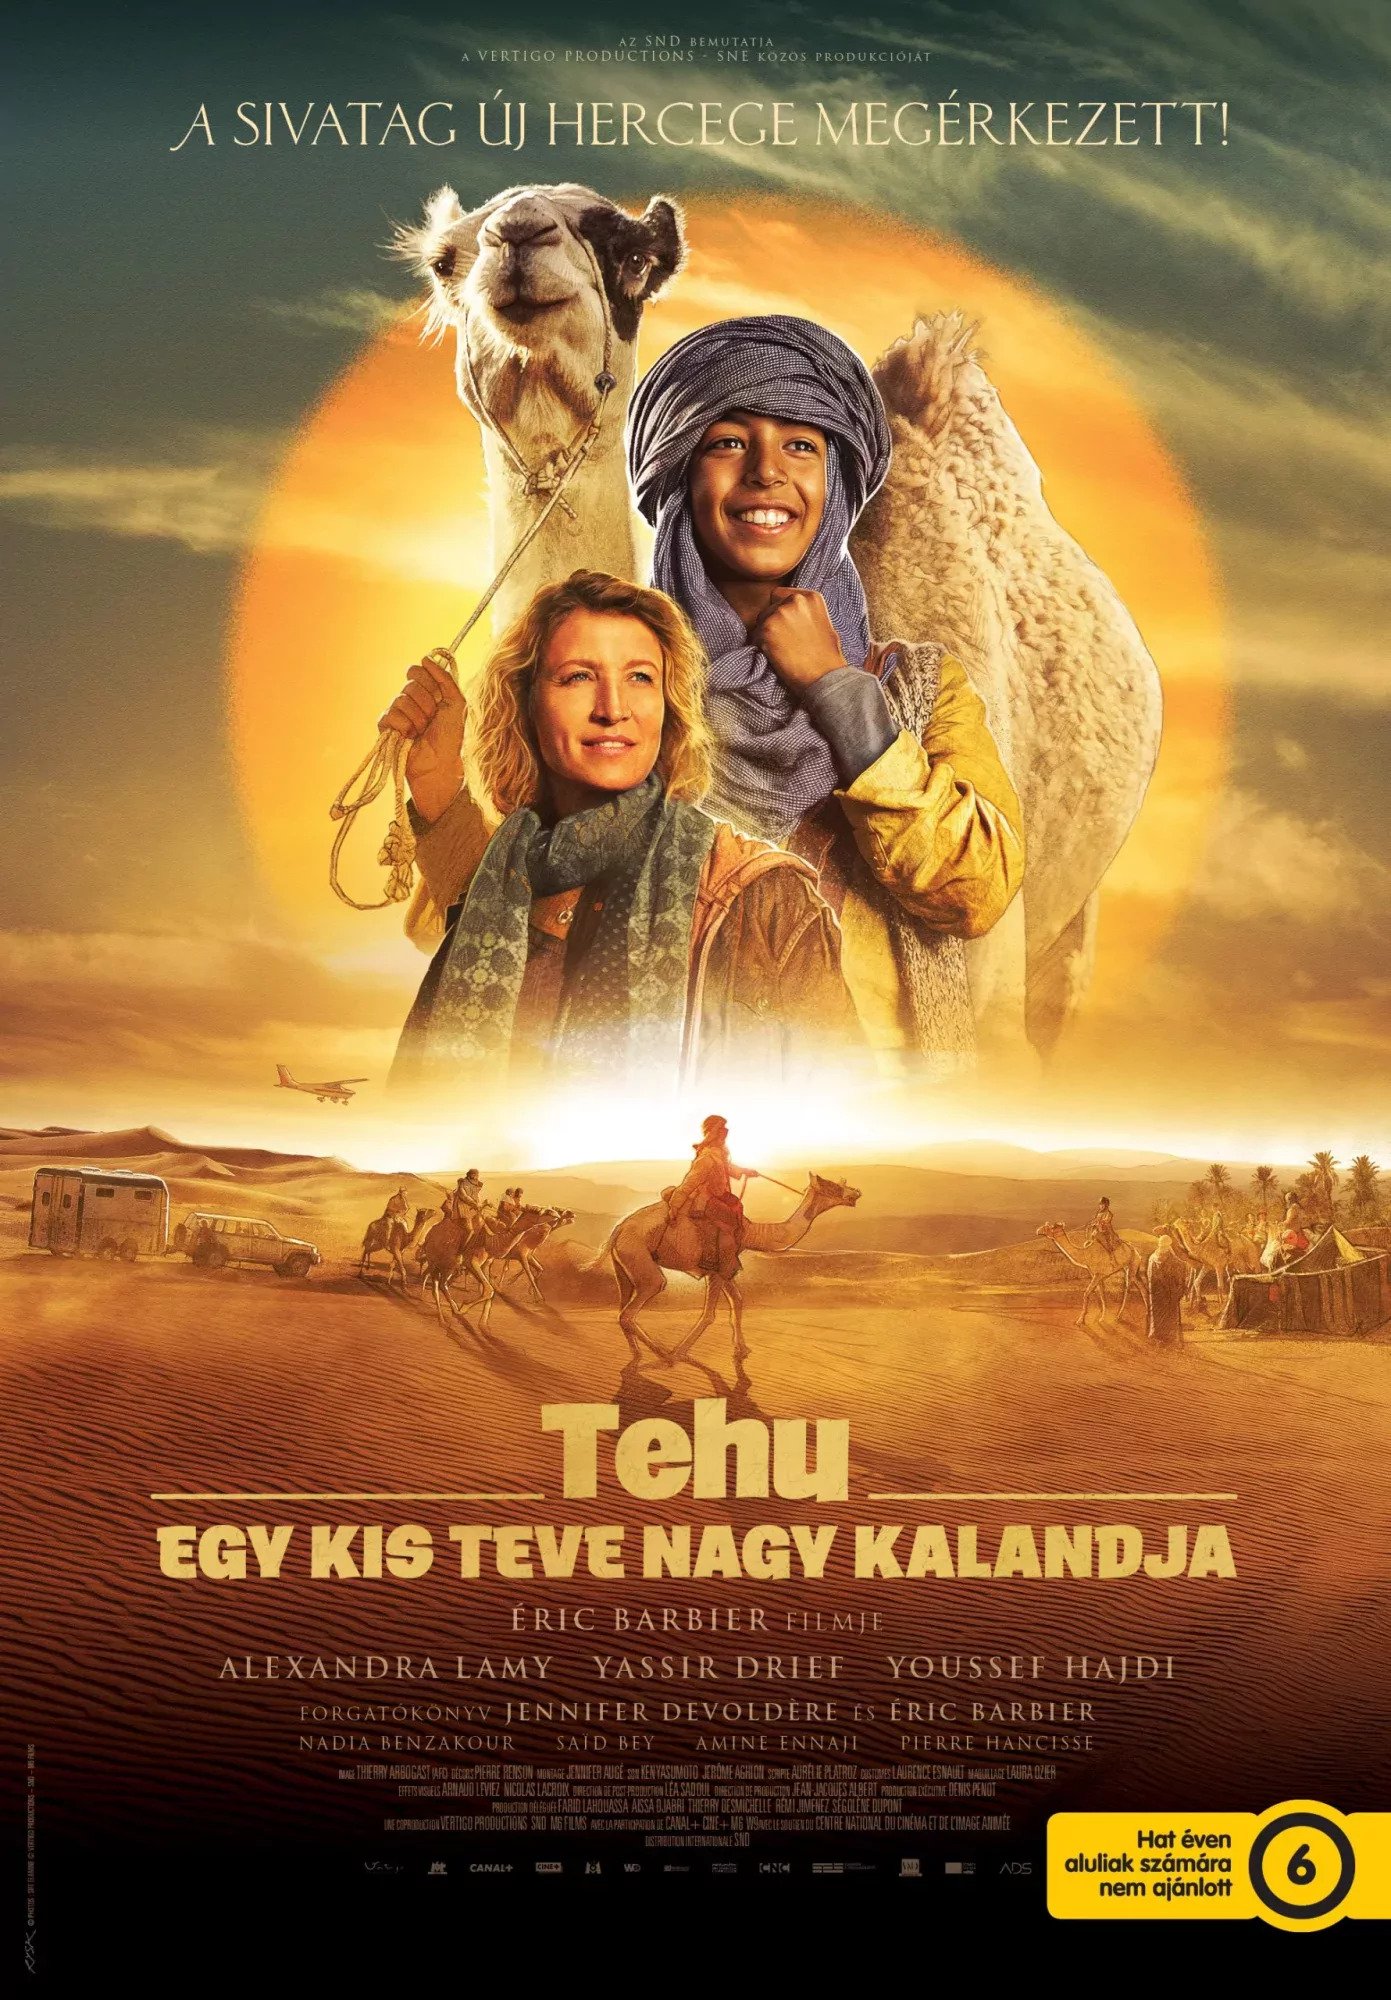 Tehu - Egy kis teve nagy kalandja